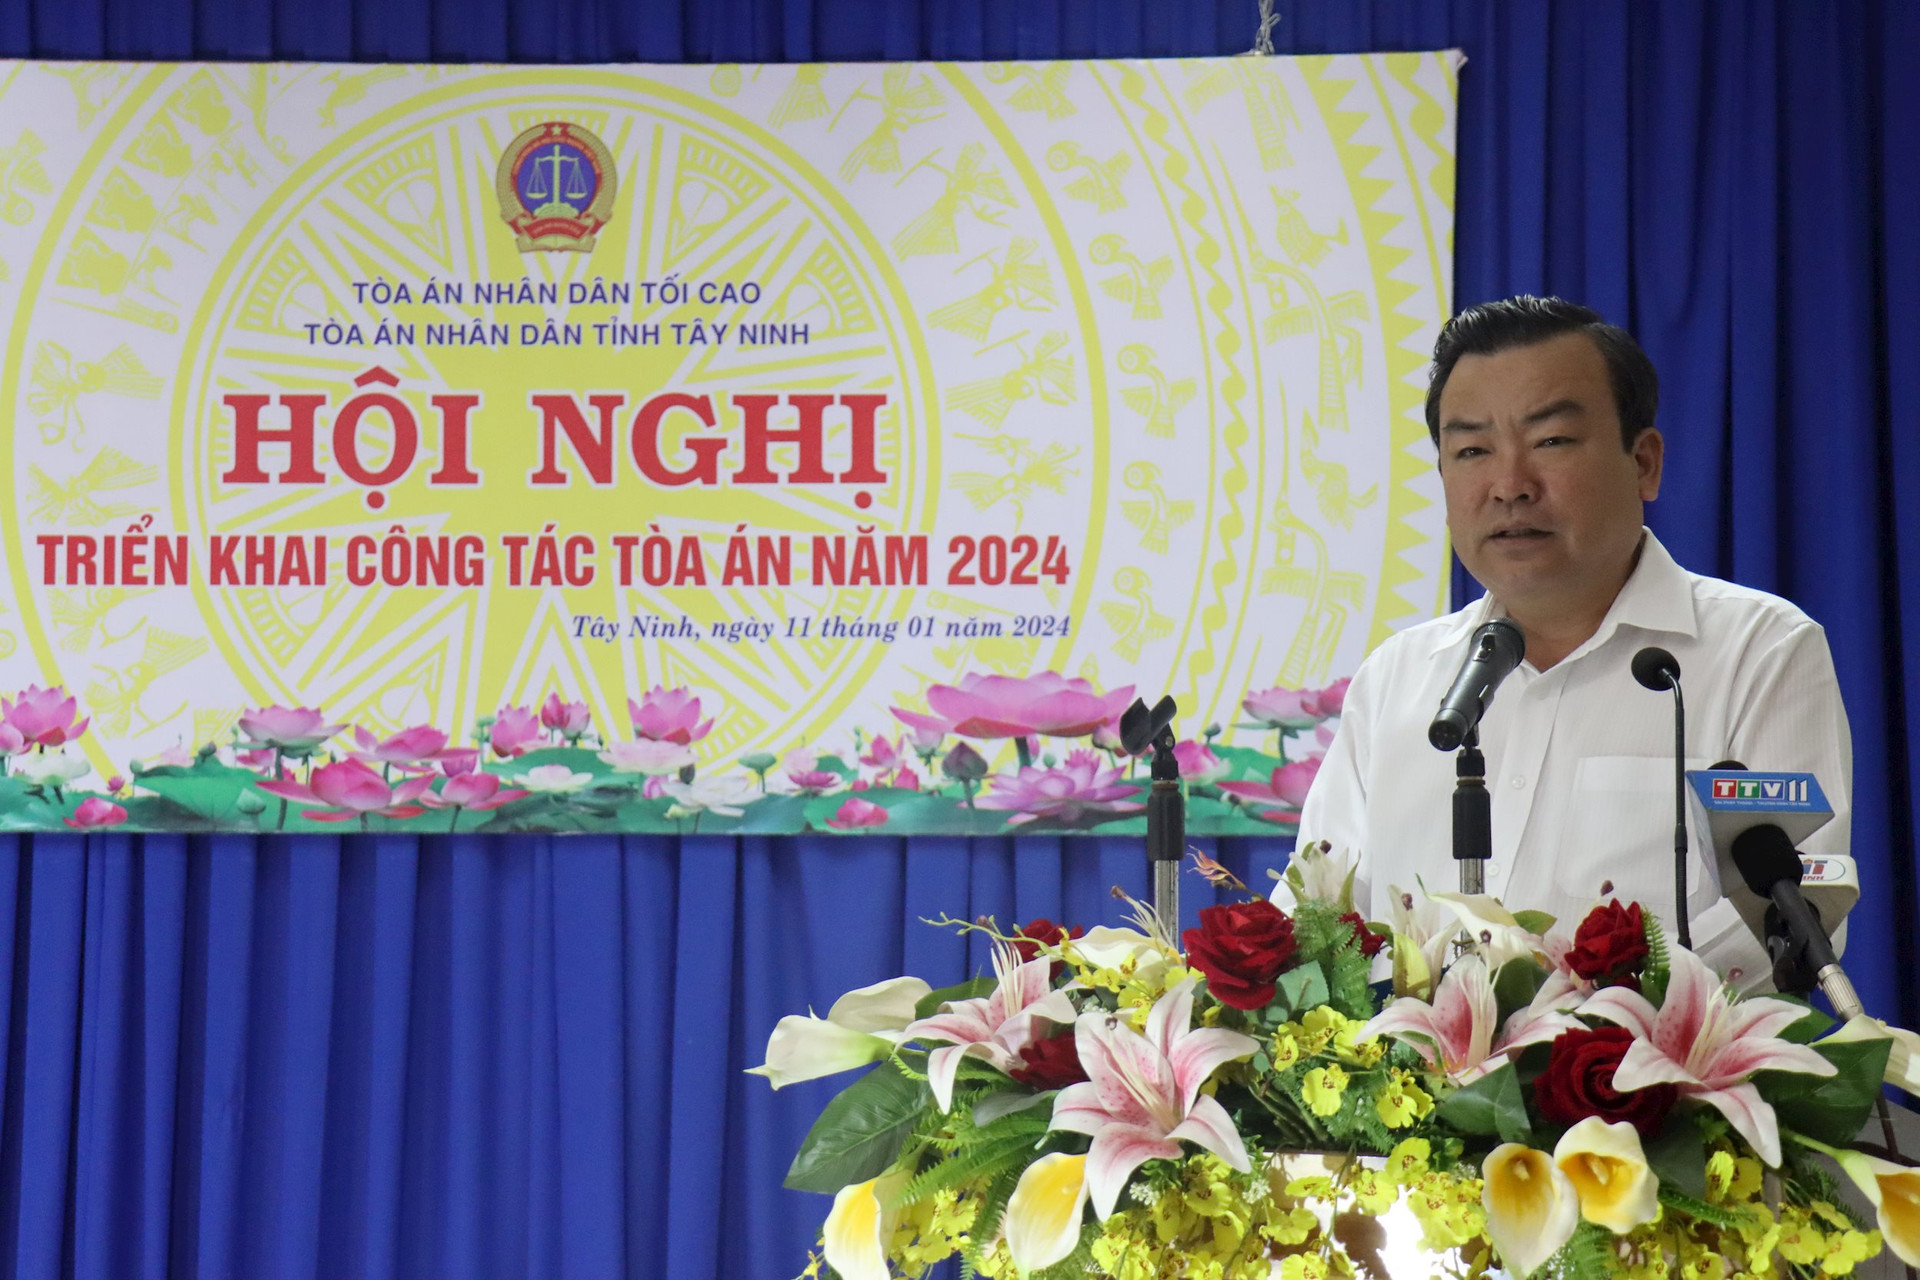 Phó Bí thư Thường trực Tỉnh uỷ, Trưởng đoàn Đại biểu Quốc hội tỉnh Tây Ninh - Phạm Hùng Thái biểu dương những thành tích mà TAND đạt được trong năm 2023